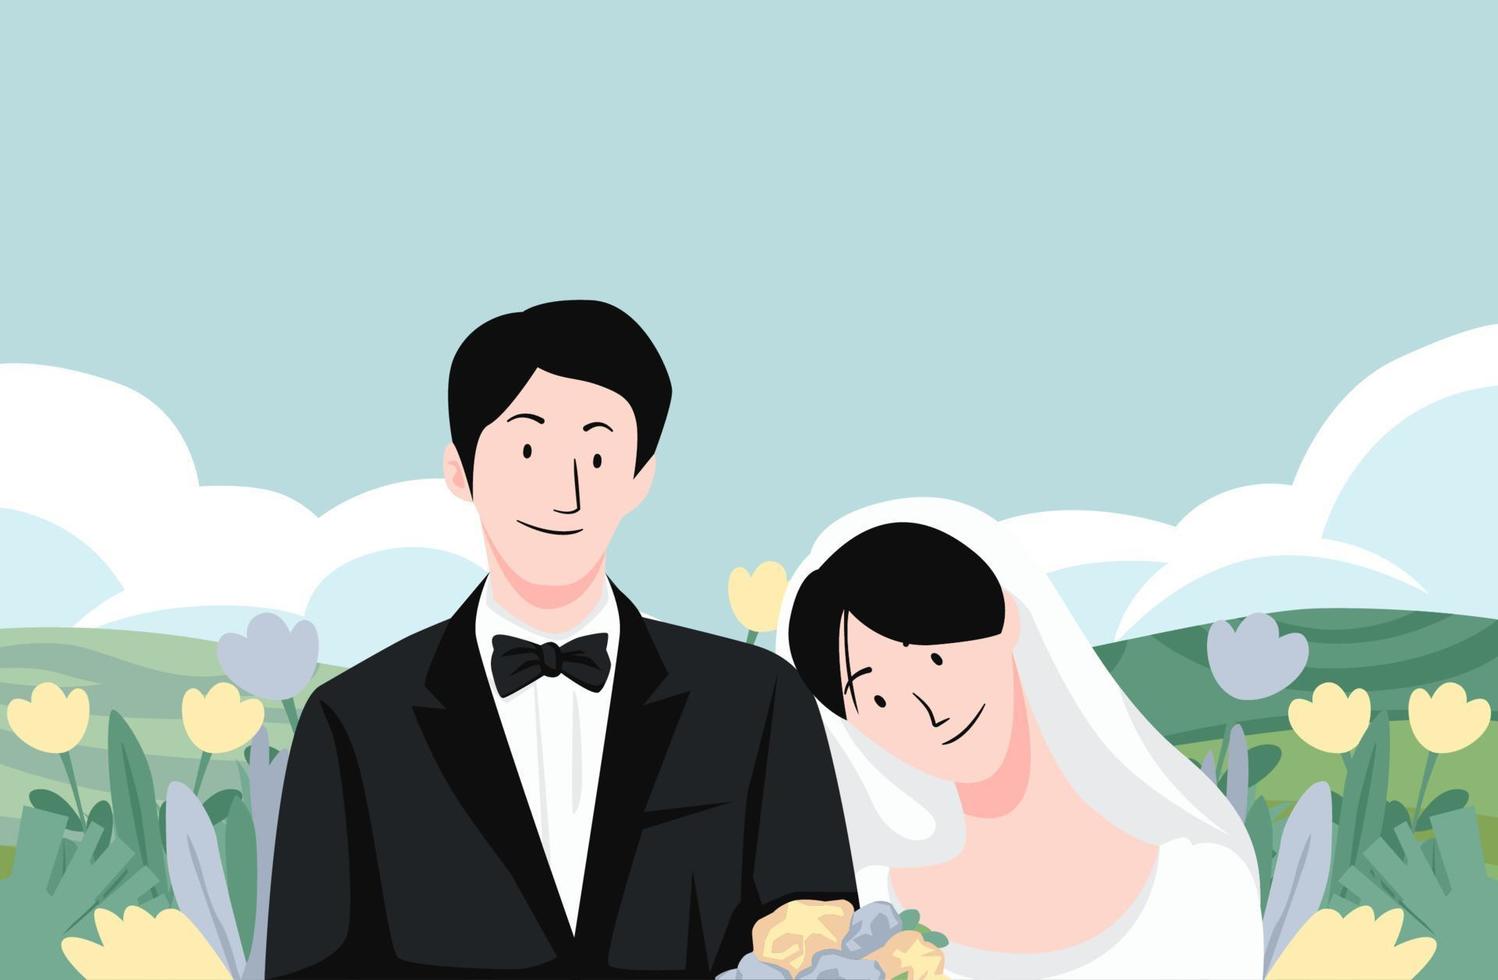 jour de mariage coloré mariée et le marié couple cérémonie de mariage avec paysage de colline et illustration vectorielle de paysage vecteur